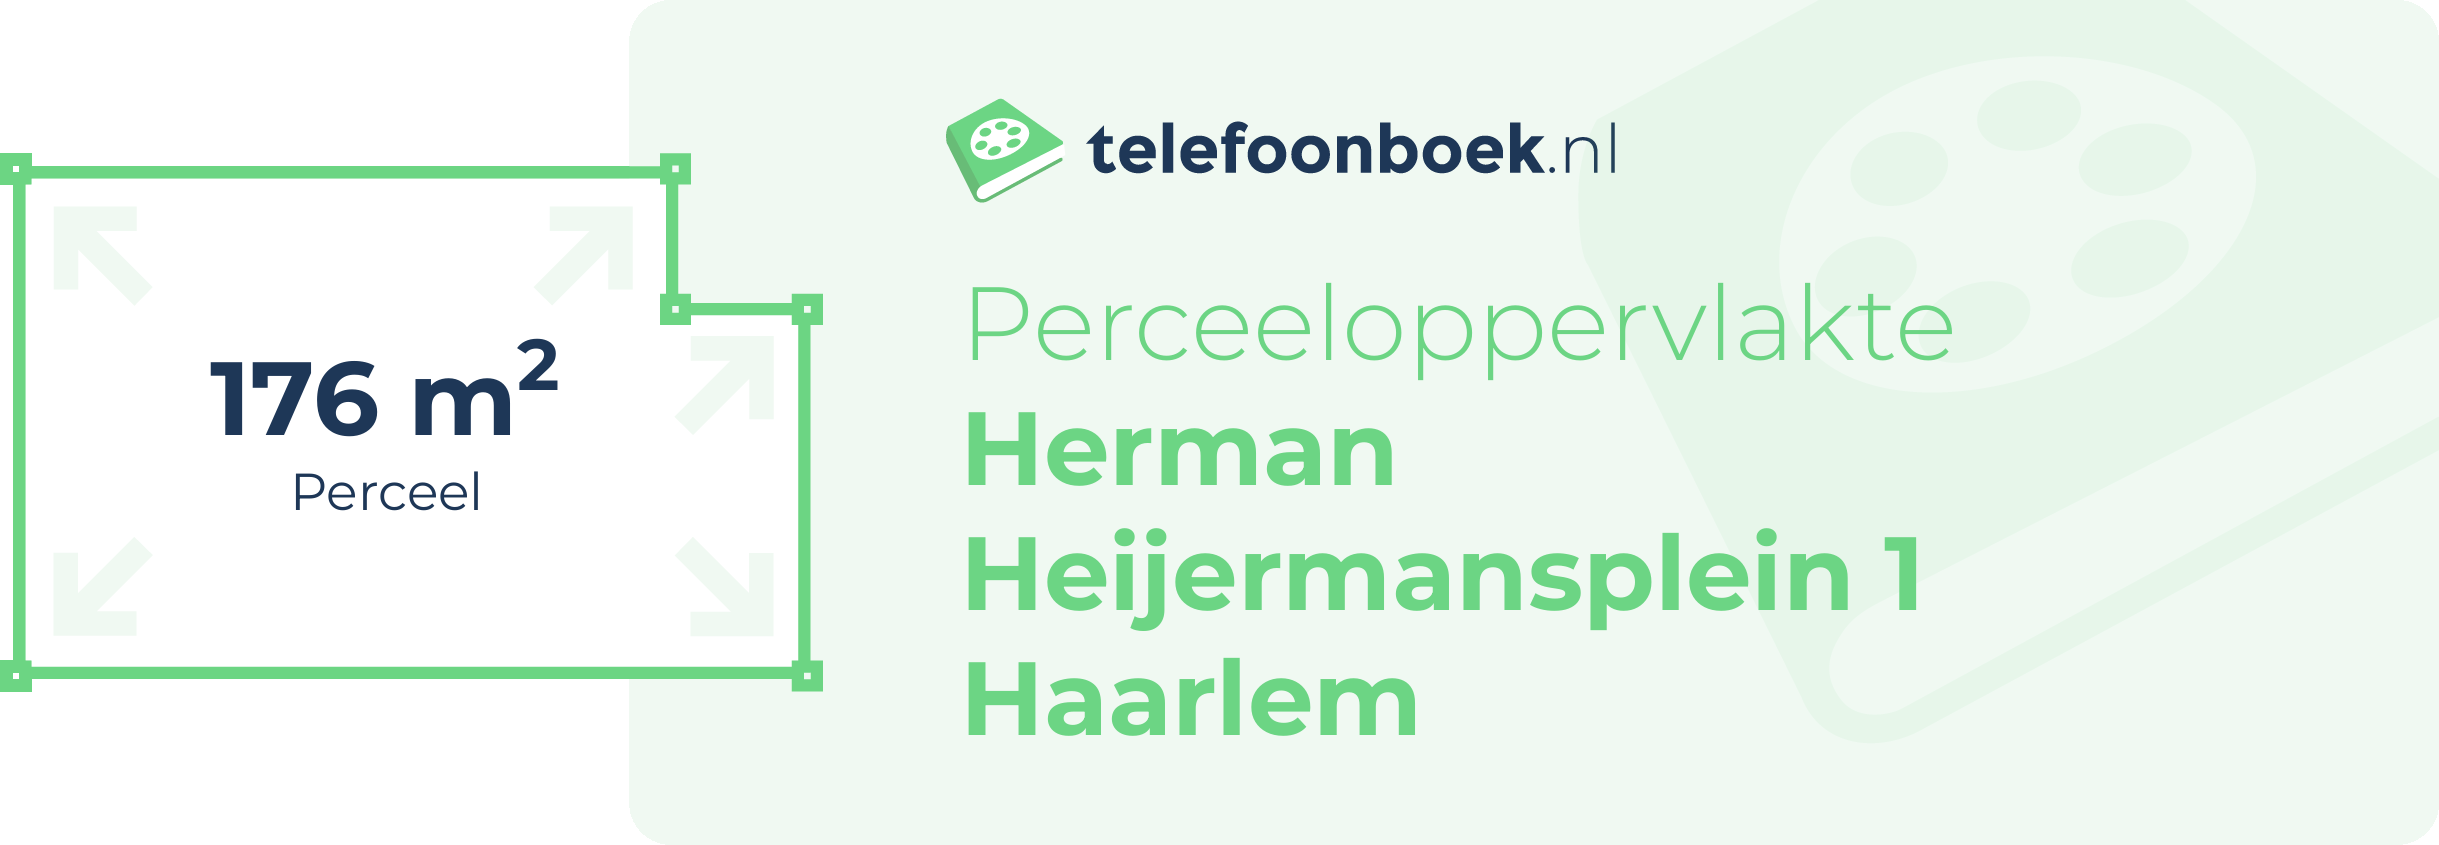 Perceeloppervlakte Herman Heijermansplein 1 Haarlem